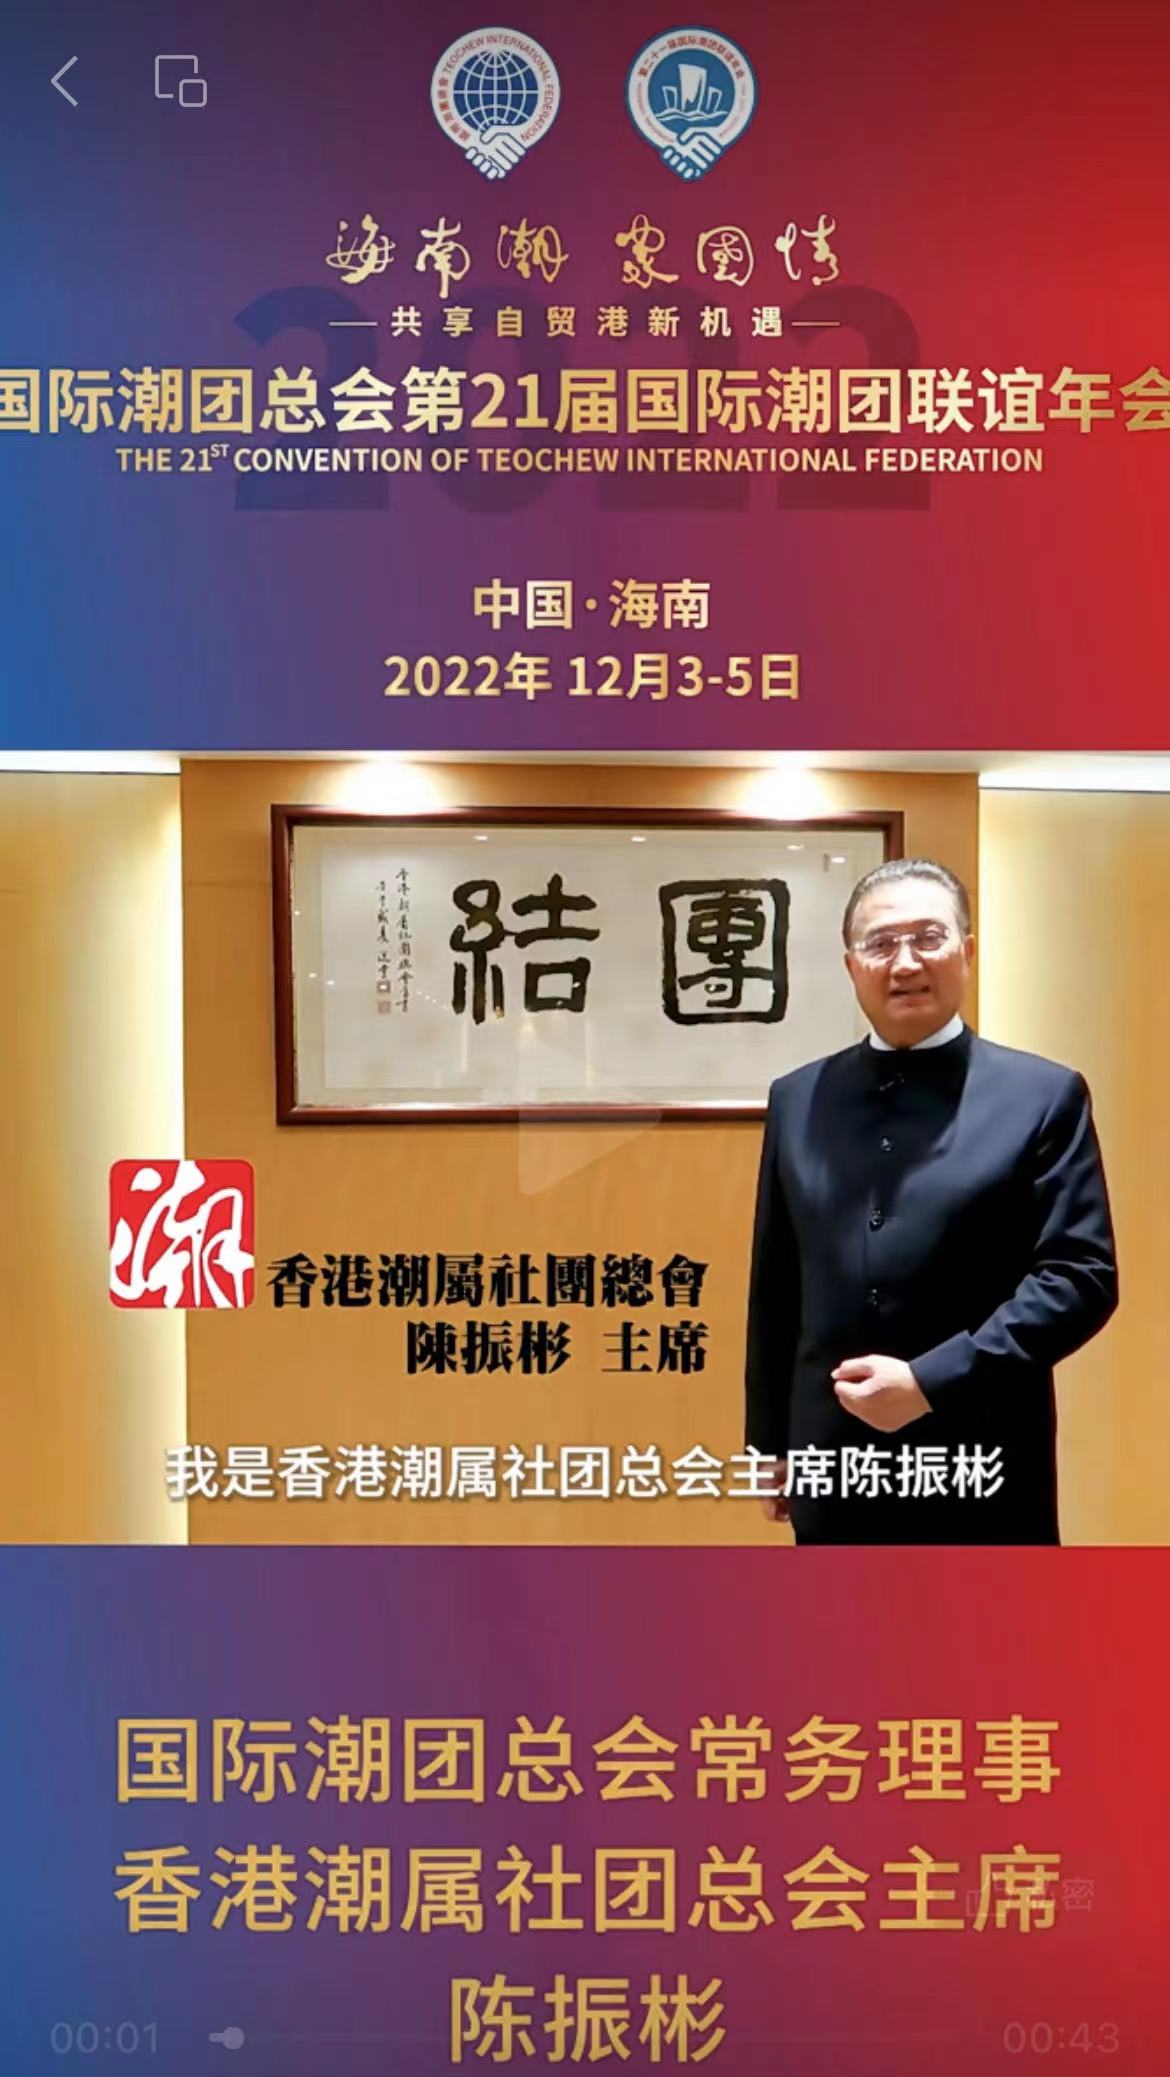 国际潮团总会常务理事、香港潮属社团总会主席陈振彬发来祝贺视频，为第21届国际潮团联谊年会加油助力